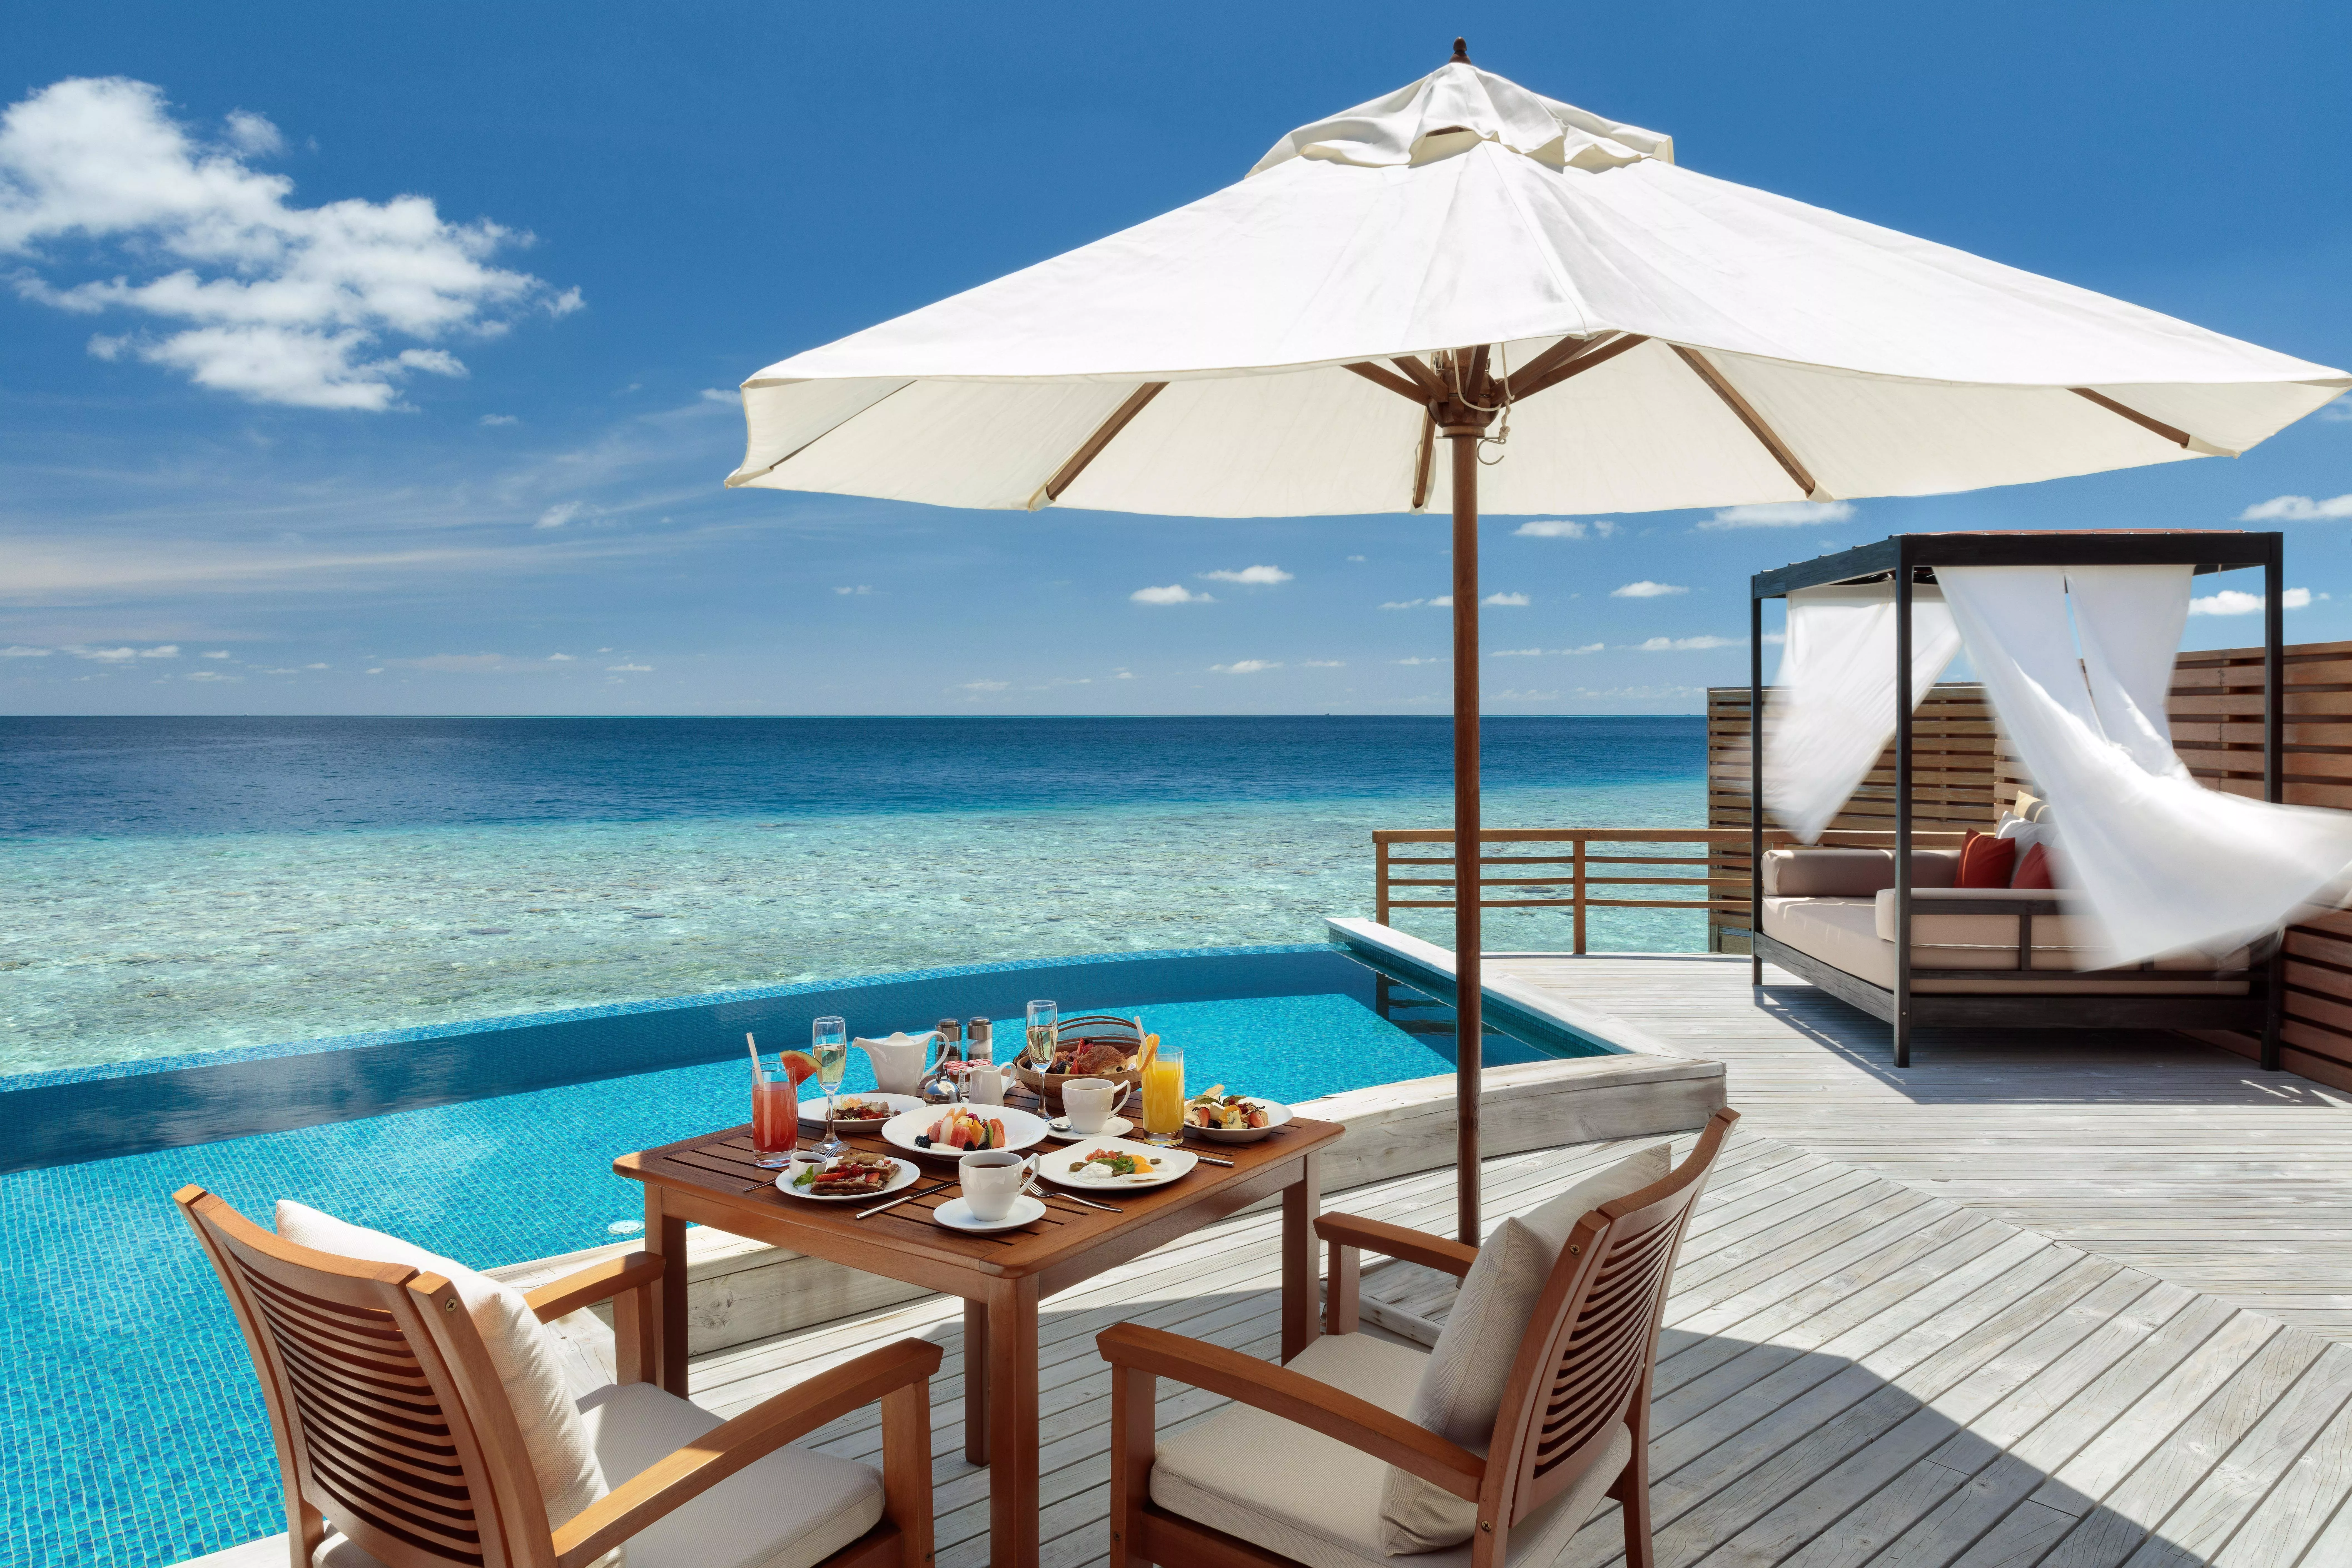 المالديف ضمن خياراتكِ لقضاء إجازة الصيف؟ إليكِ إذاً افضل منتجعات المالديف للعوائل